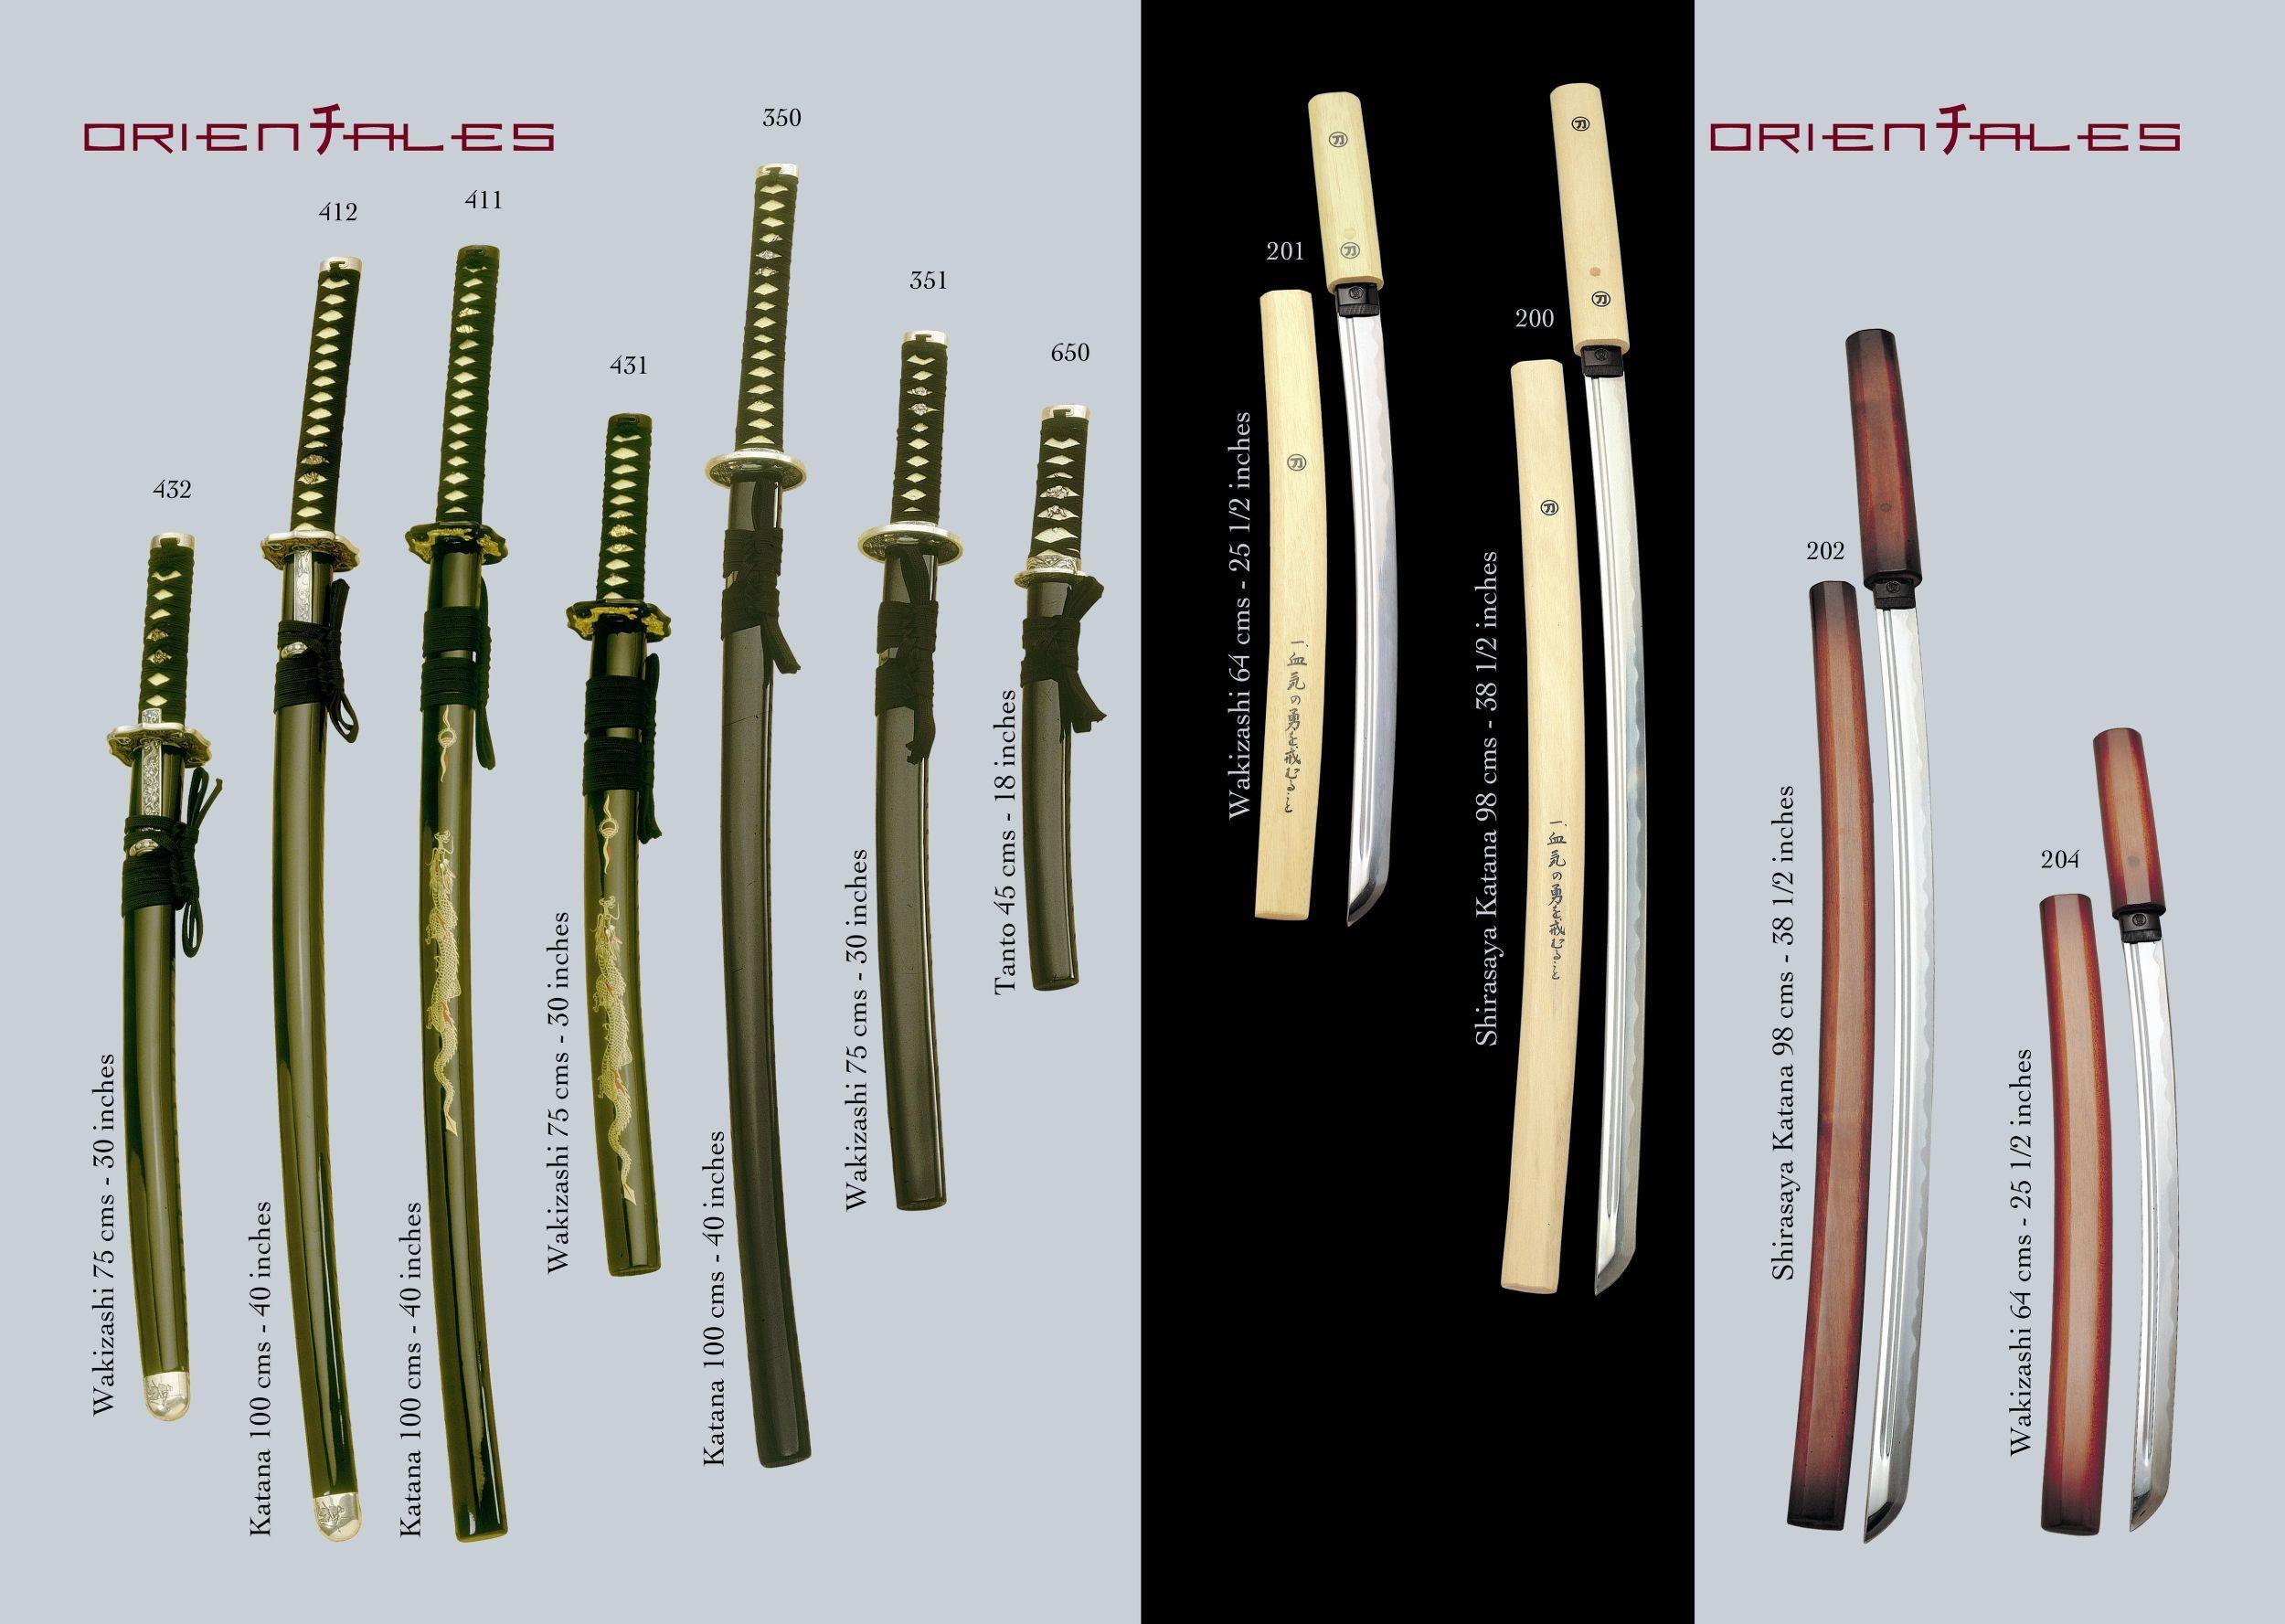 Японские мечи: история появления и секреты изготовления | железный век